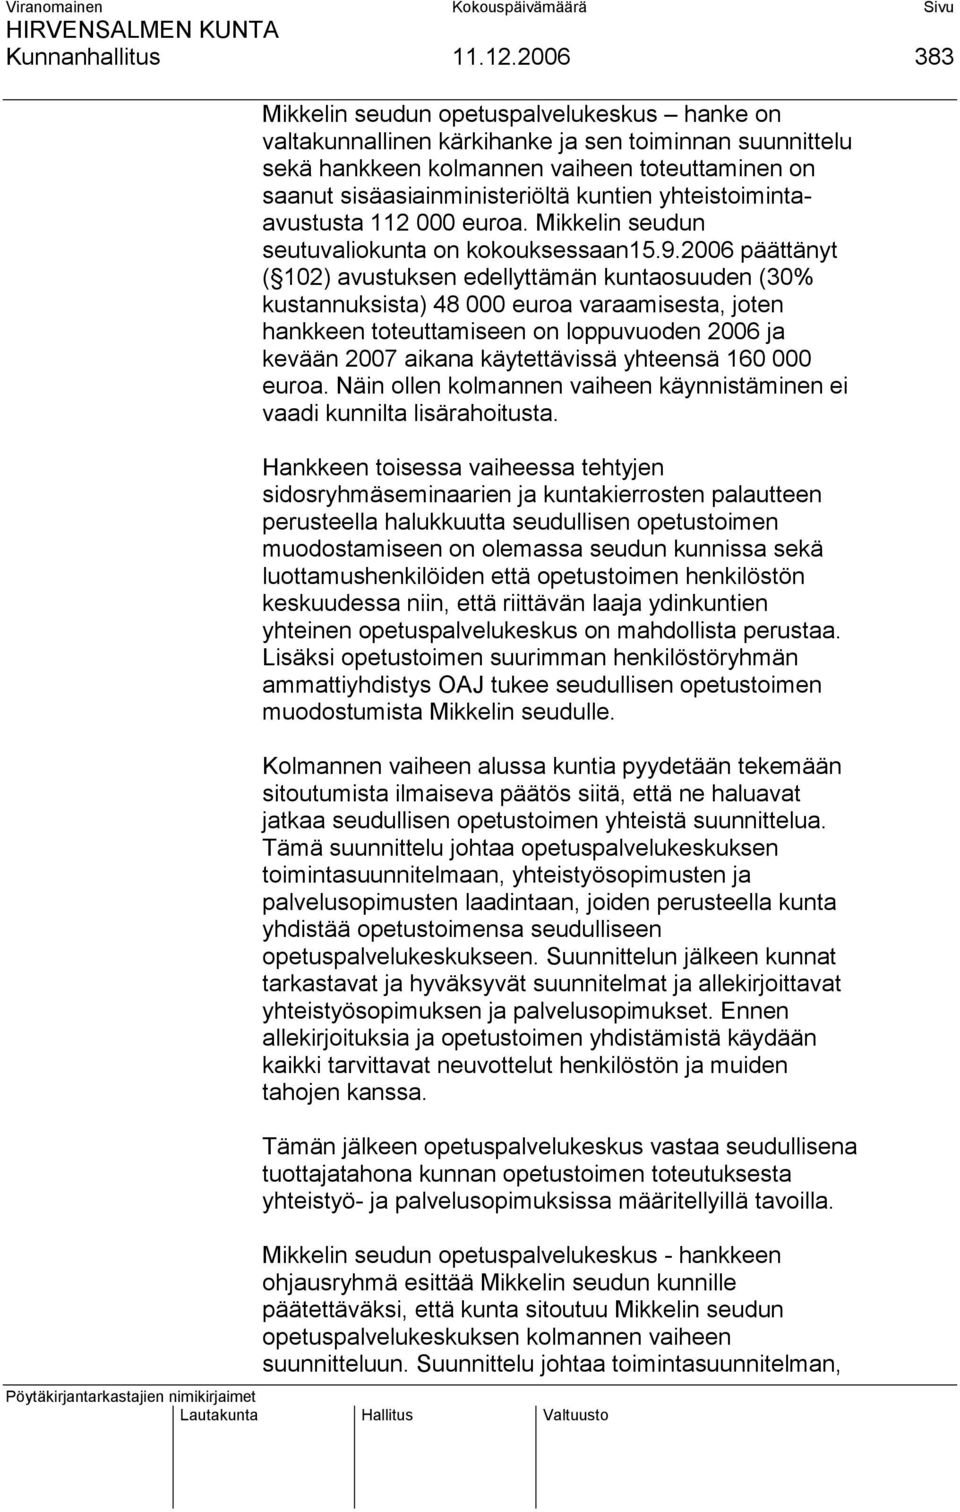 yhteistoimintaavustusta 112 000 euroa. Mikkelin seudun seutuvaliokunta on kokouksessaan15.9.